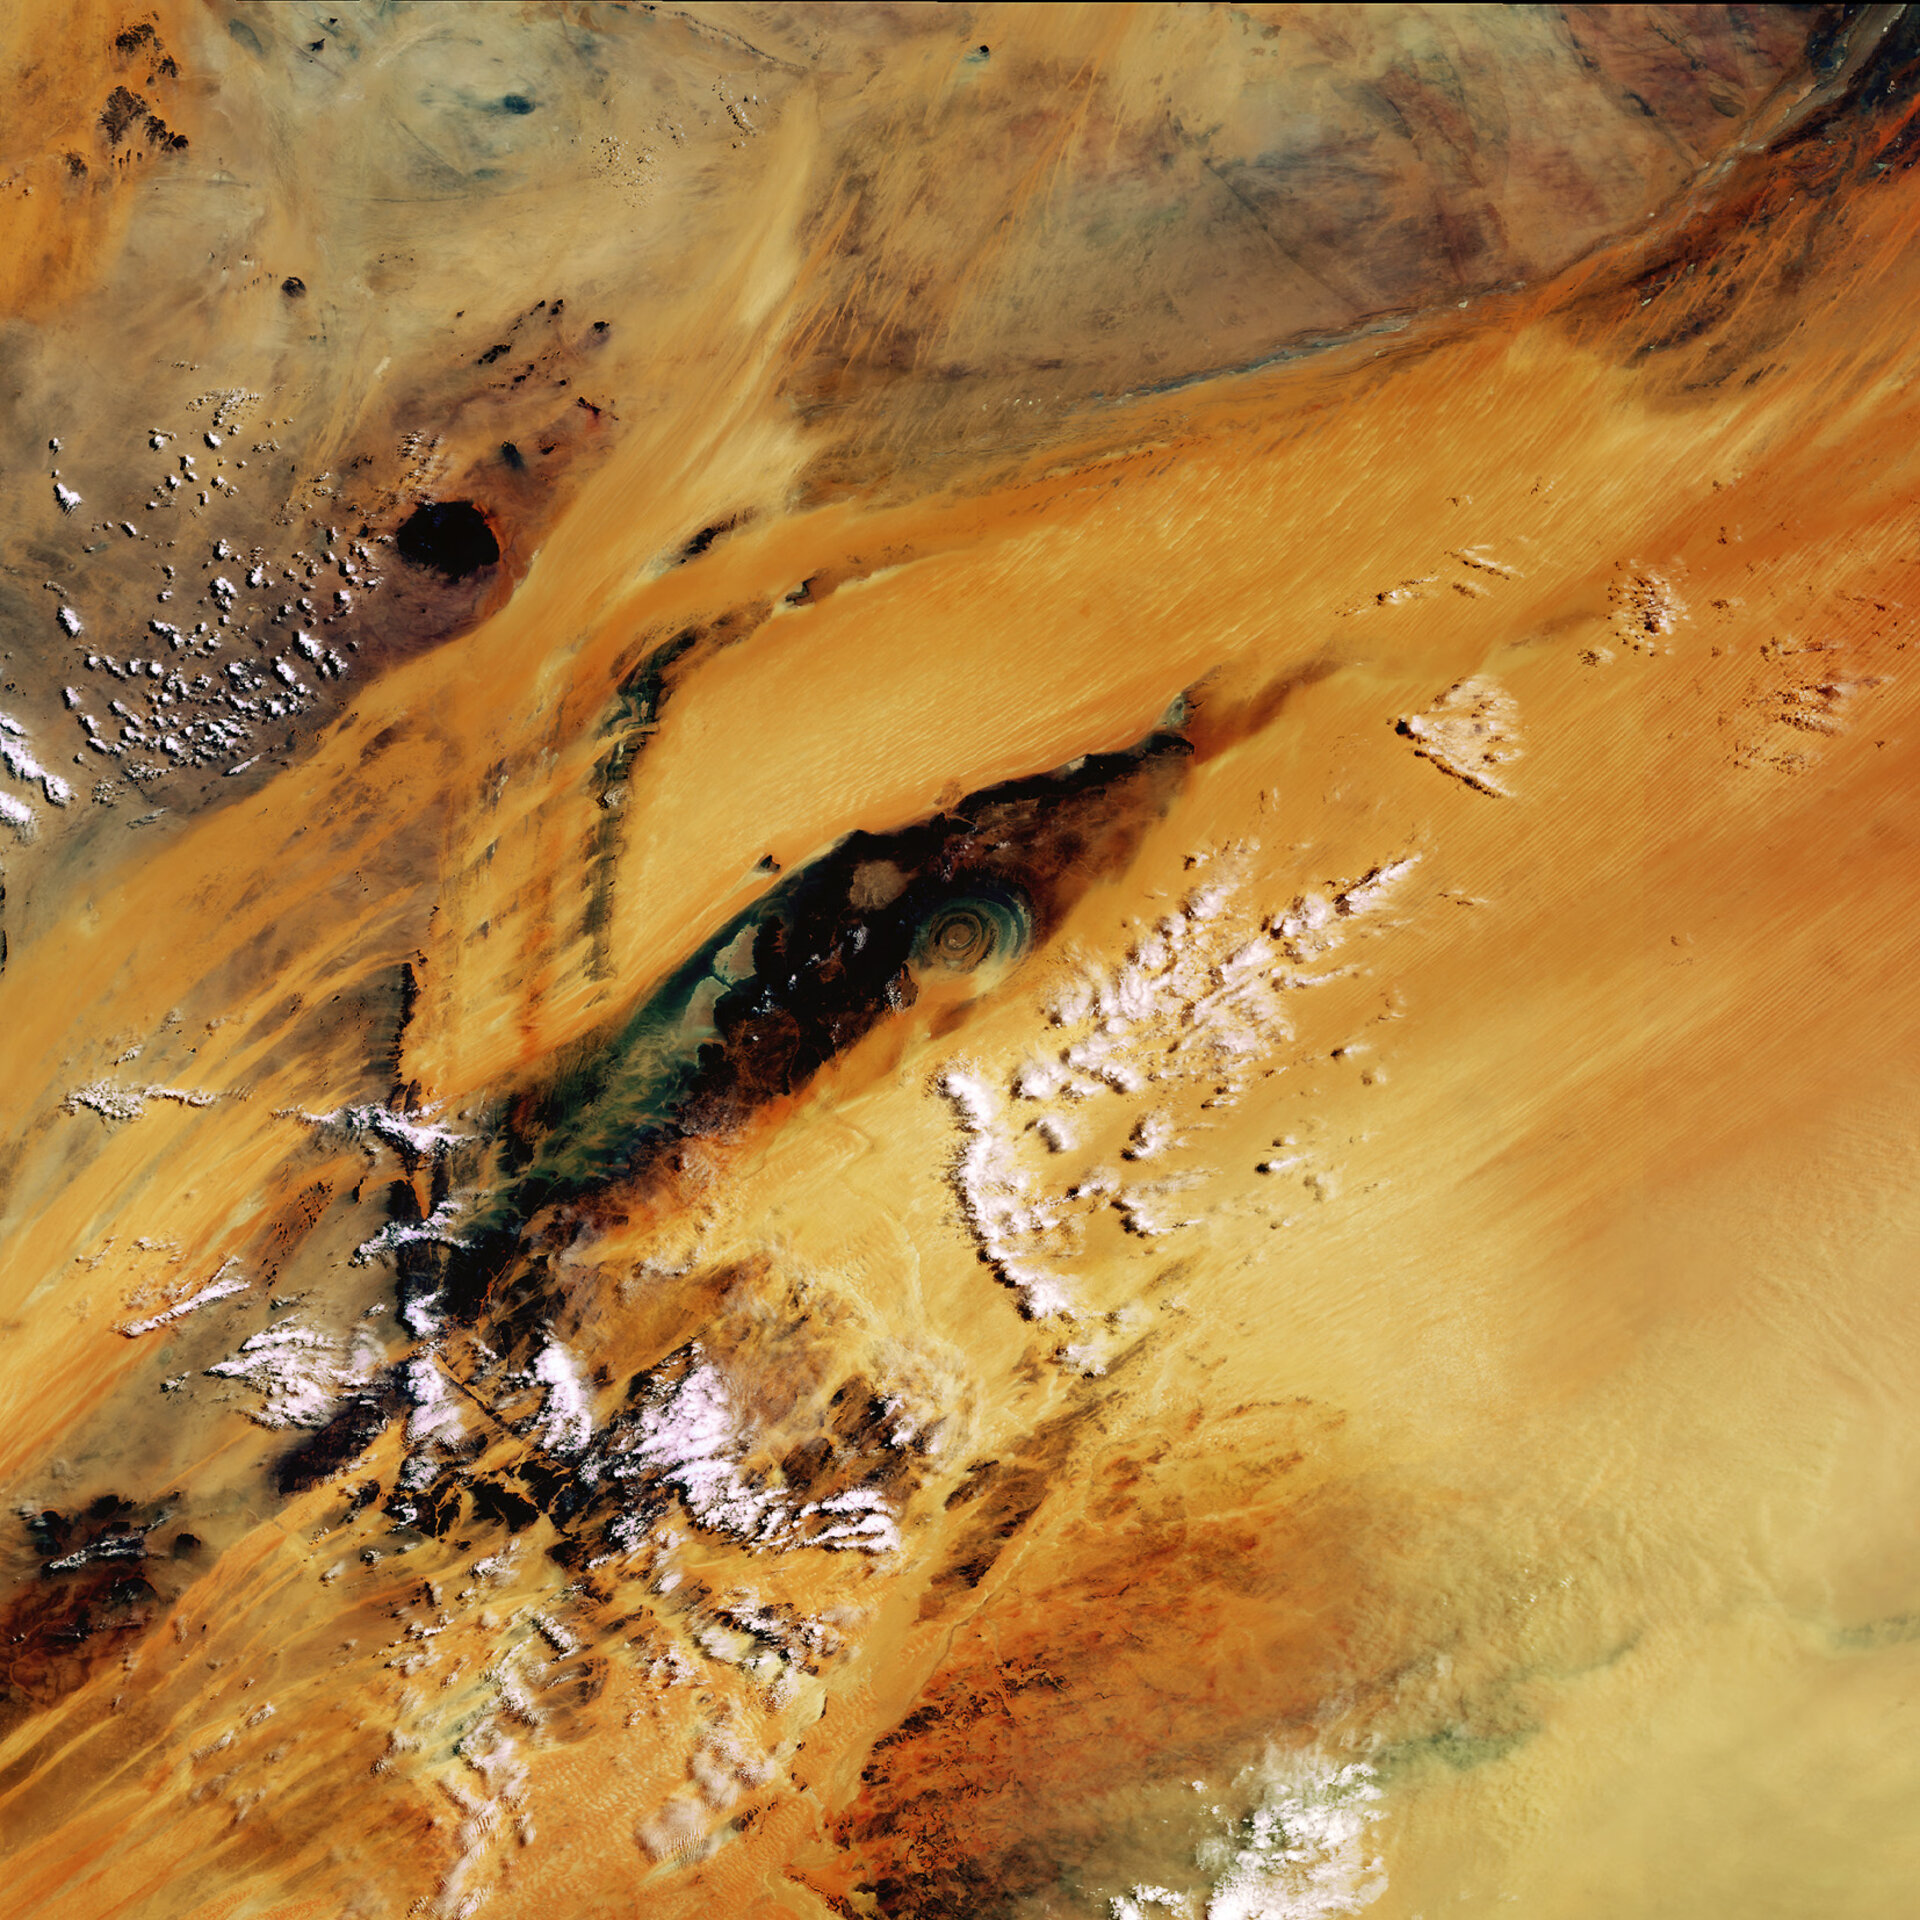 Mauritania - MERIS, 21 June 2003